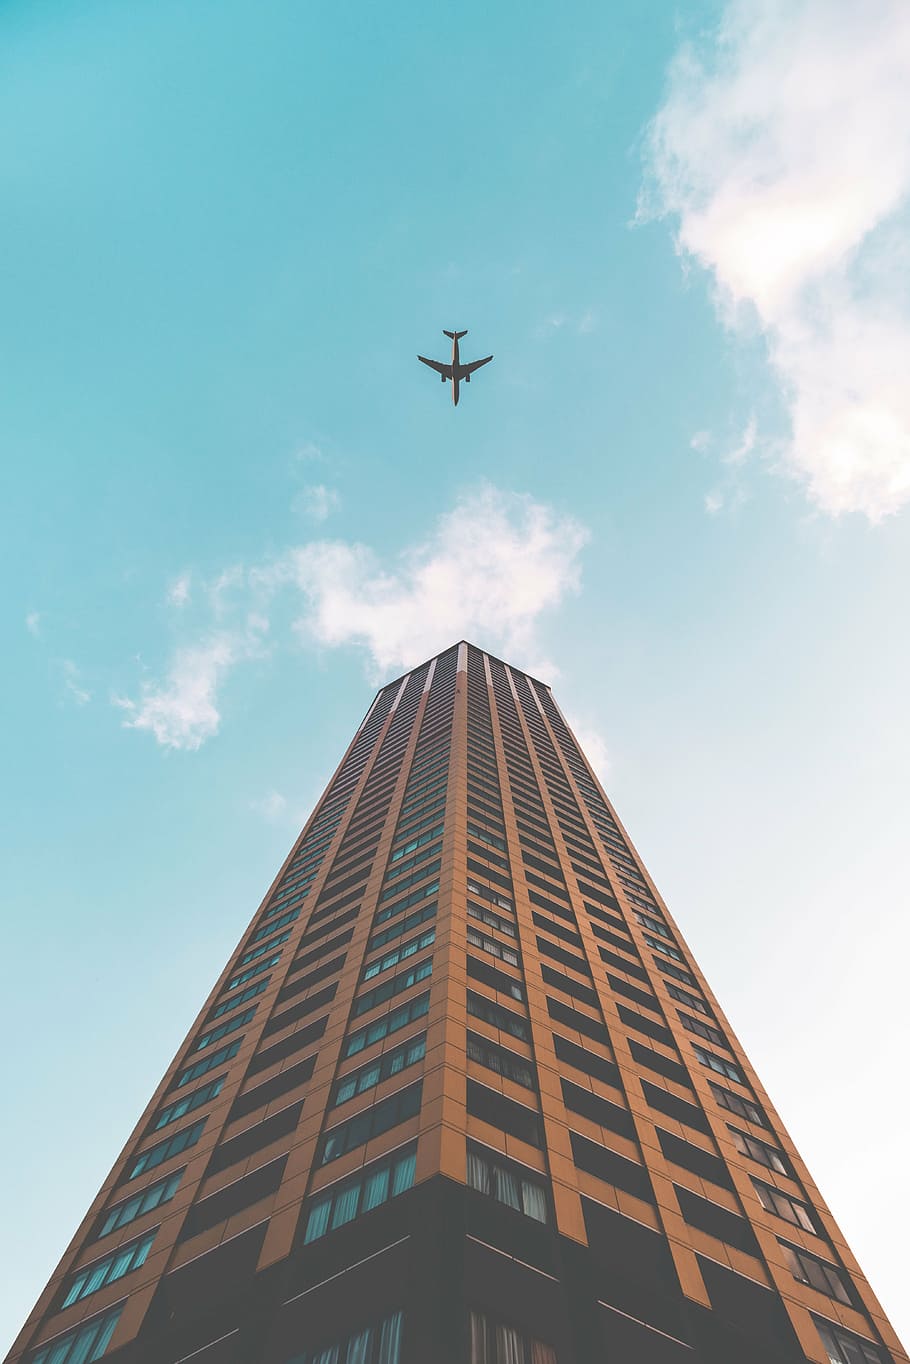 pesawat terbang, terbang, langit, bangunan, arsitektur, infrastruktur, pencakar langit, menara, biru, maskapai penerbangan